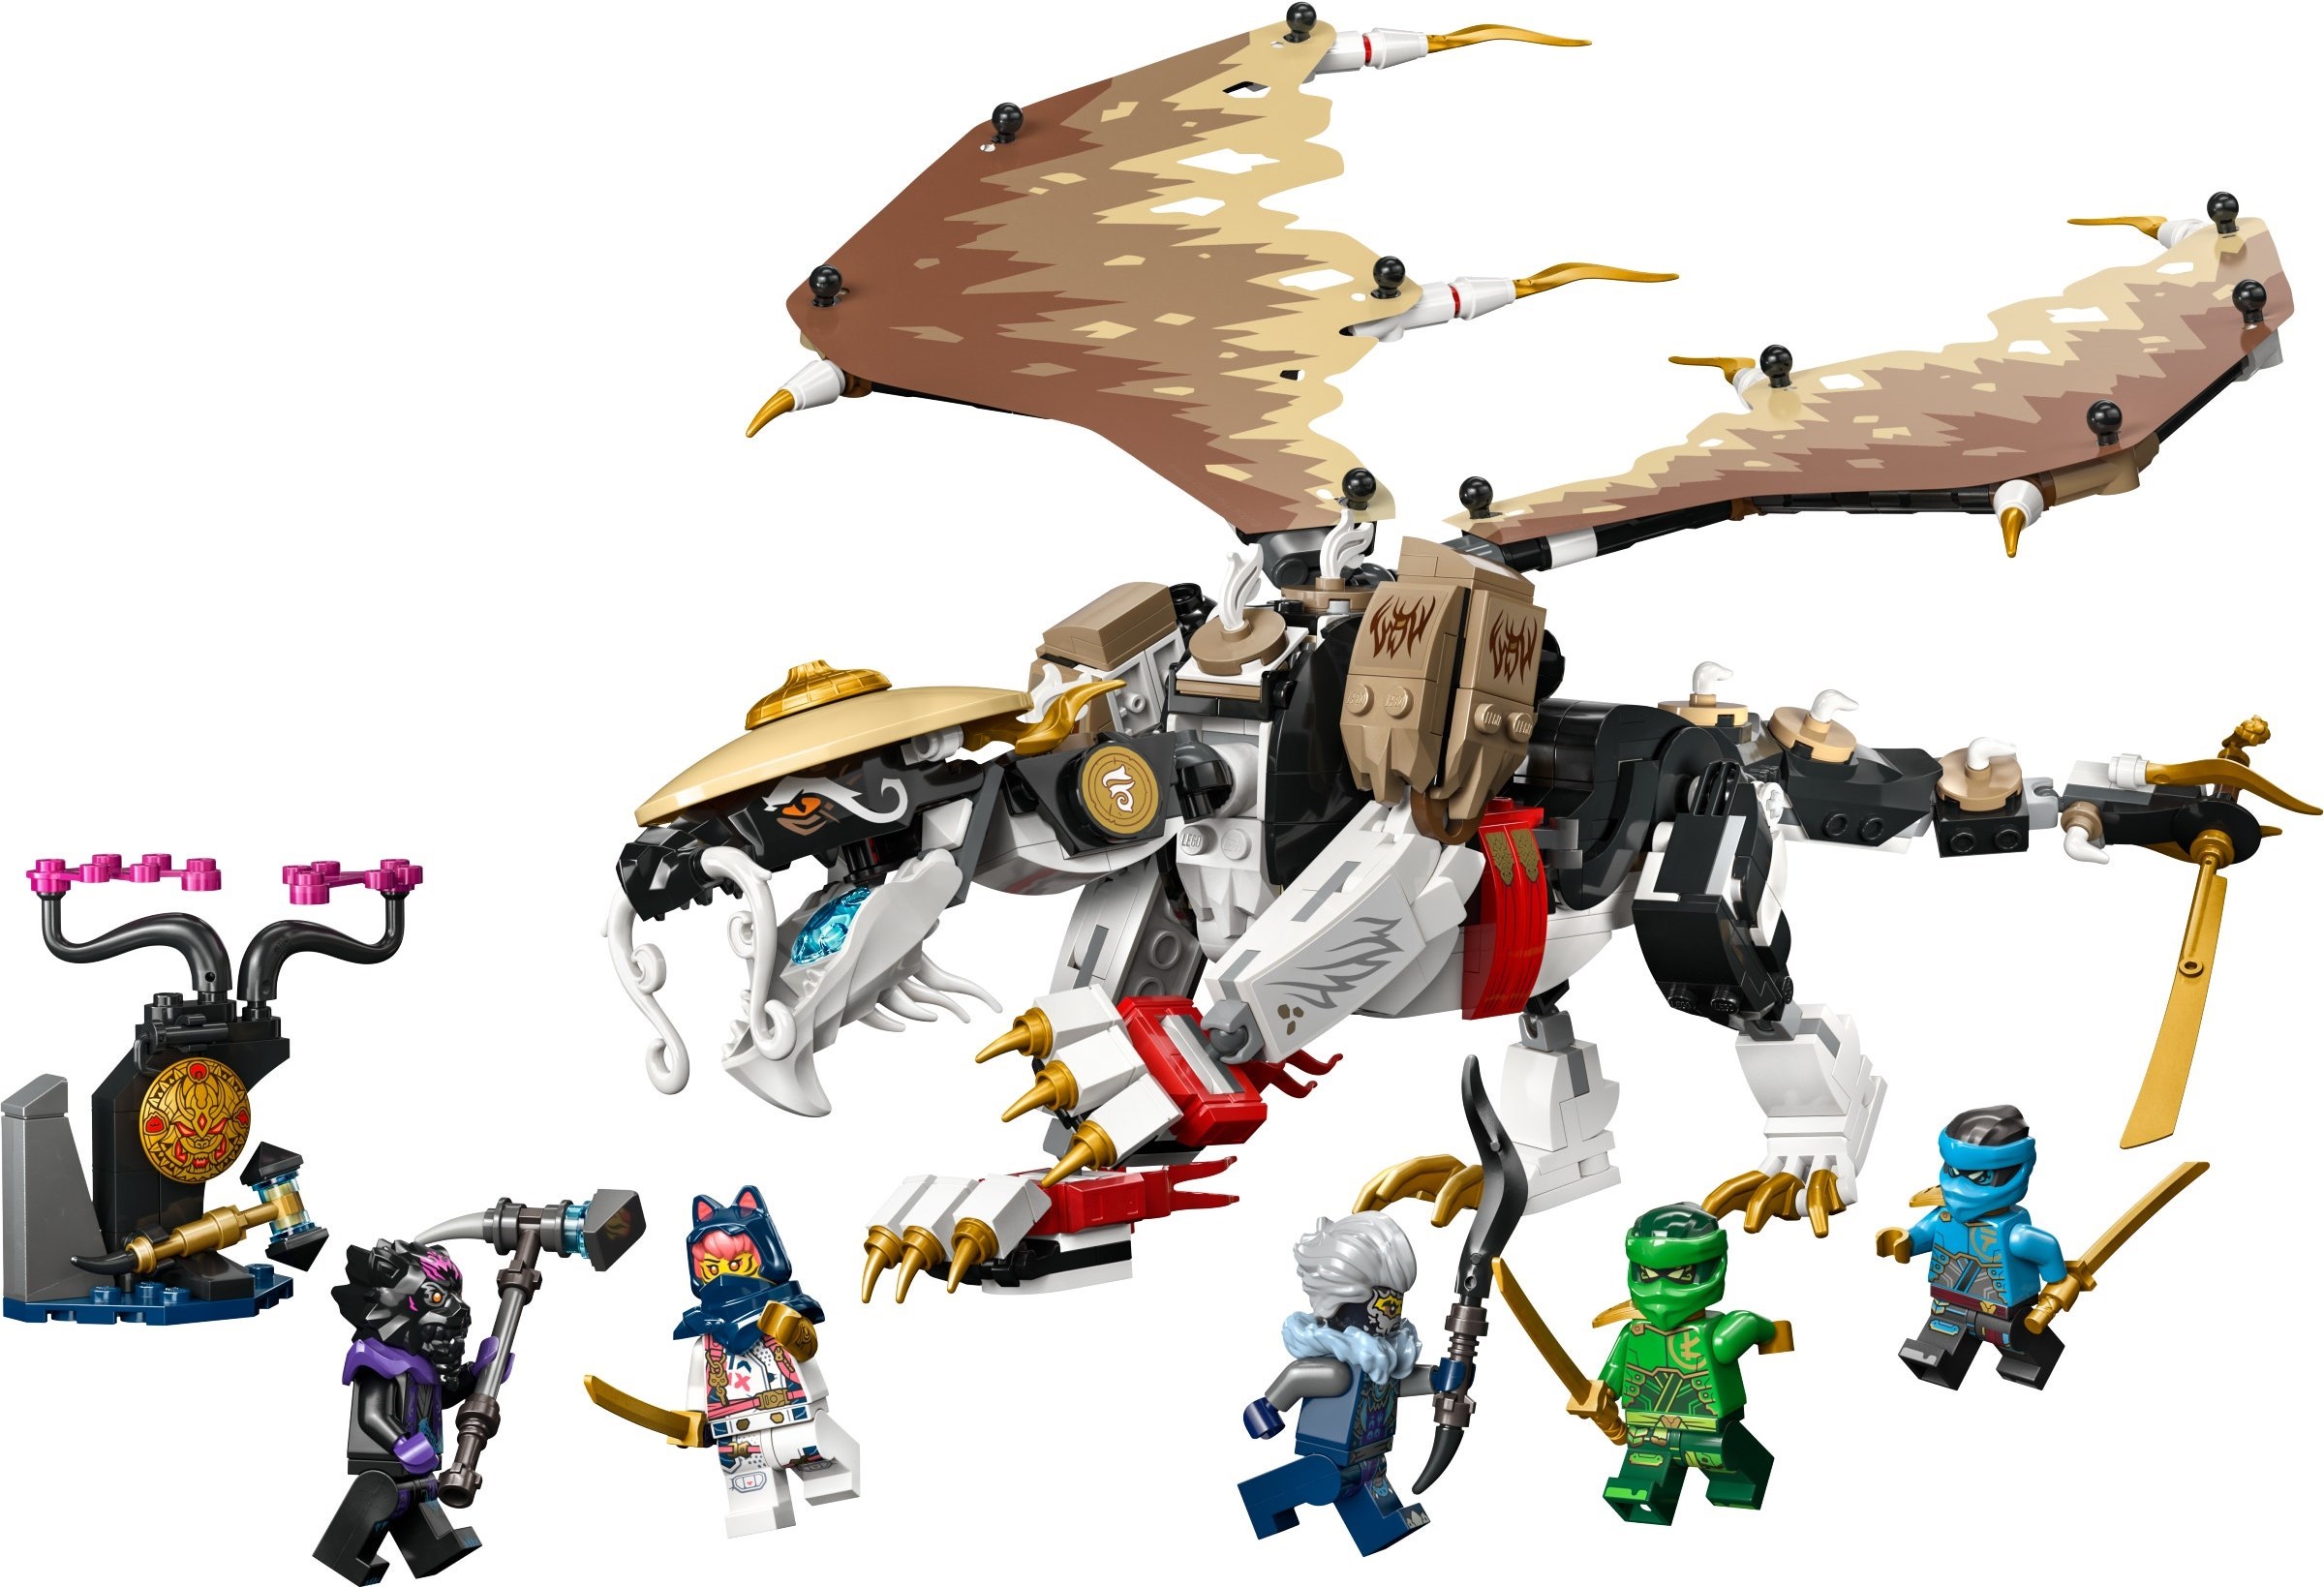 Aperçu des nouveaux LEGO Ninjago de Janvier/Mars 2024